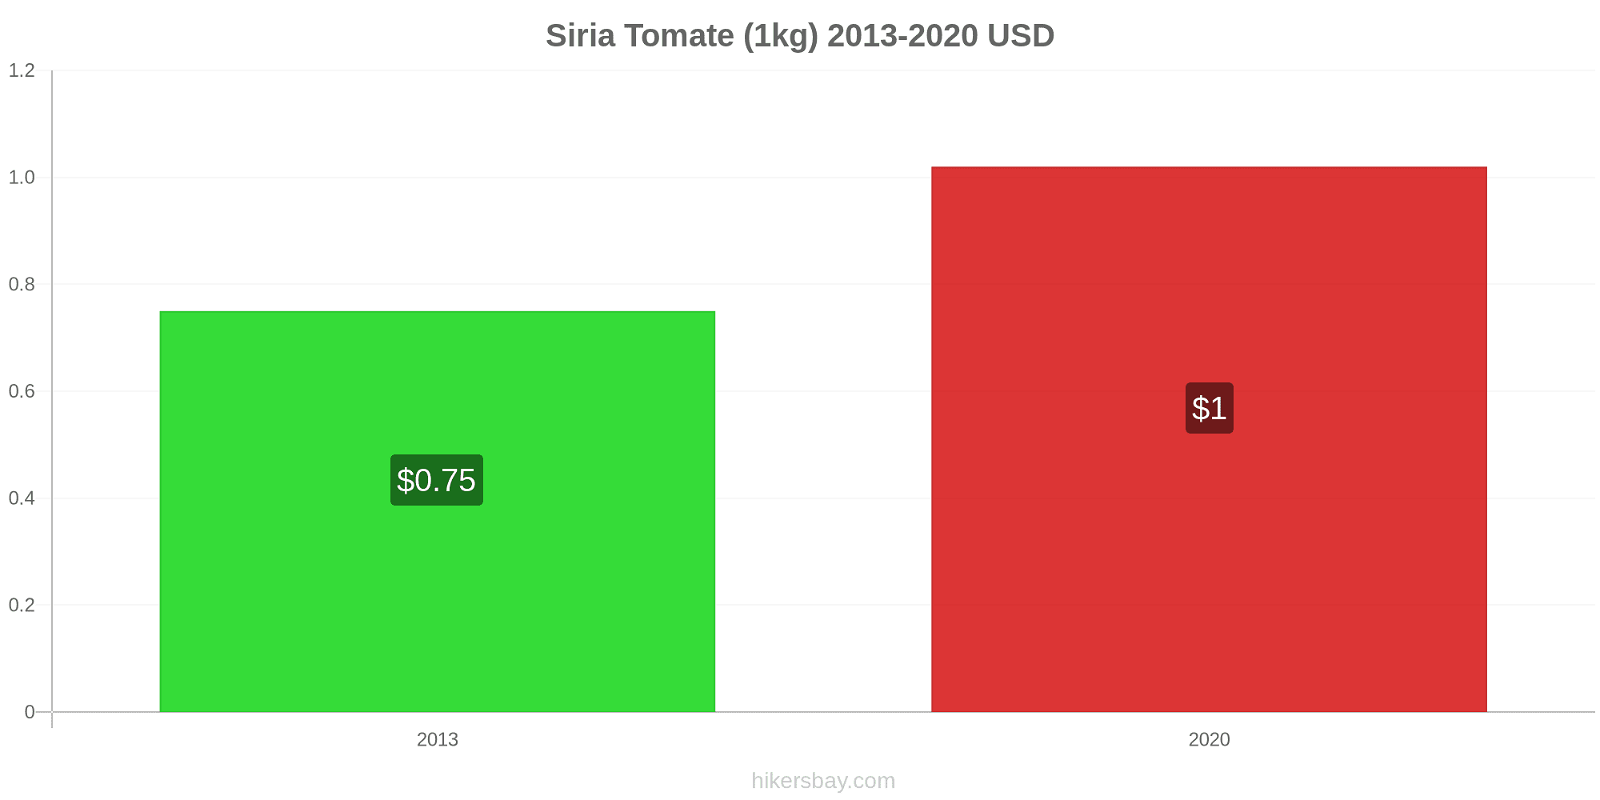 Siria cambios de precios Tomate (1kg) hikersbay.com